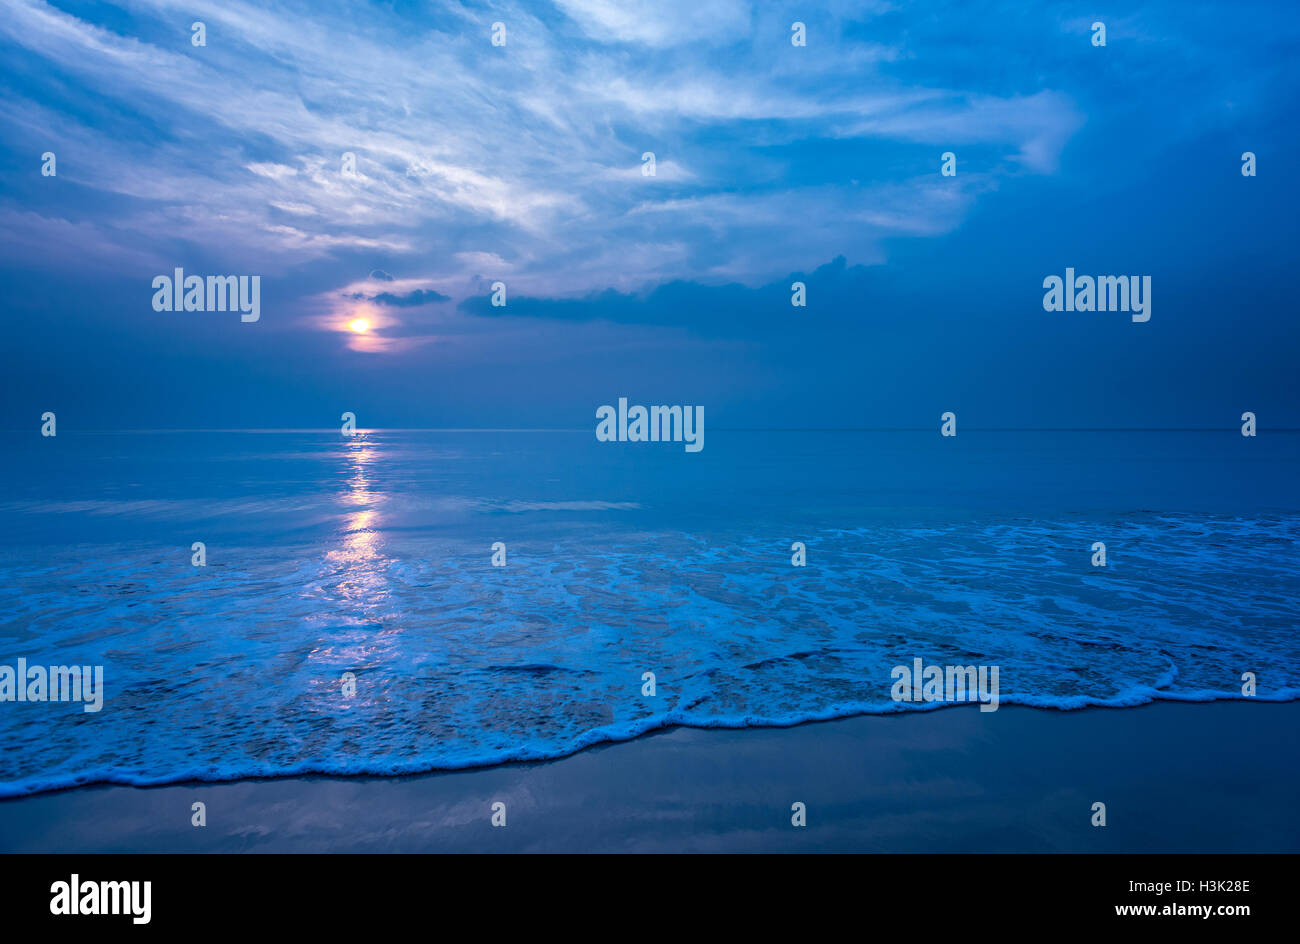 La hermosa playa y la ola de espuma suave por la noche, copie el espacio. Foto de stock